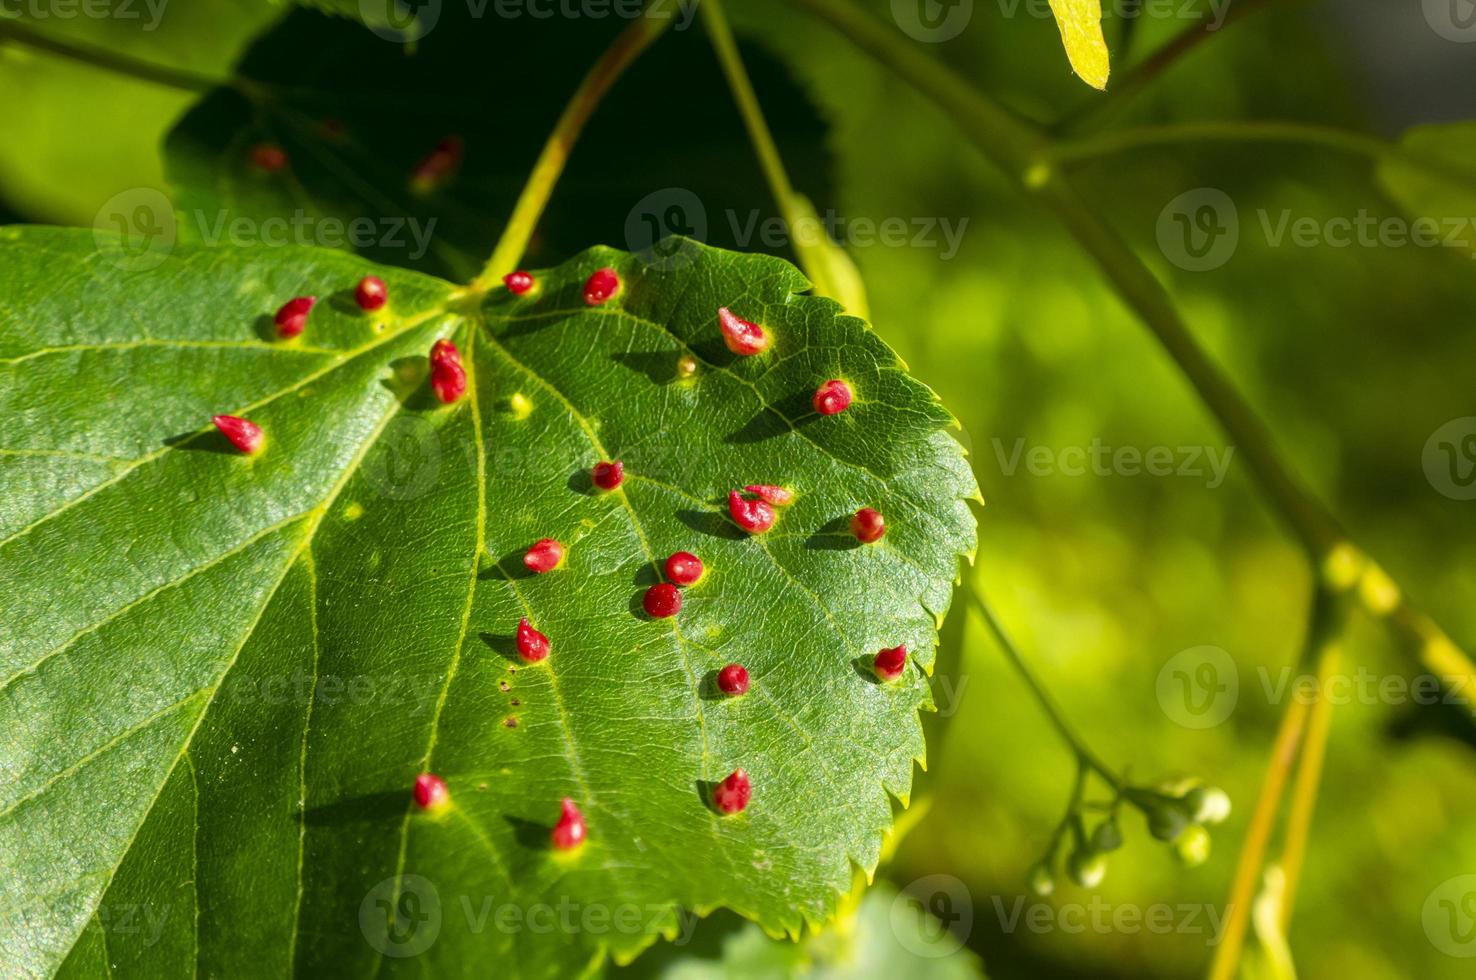 galha de unha de cal causada por ácaro de galha de unha vermelha eriophyes tiliae nas folhas de limão comum. foto